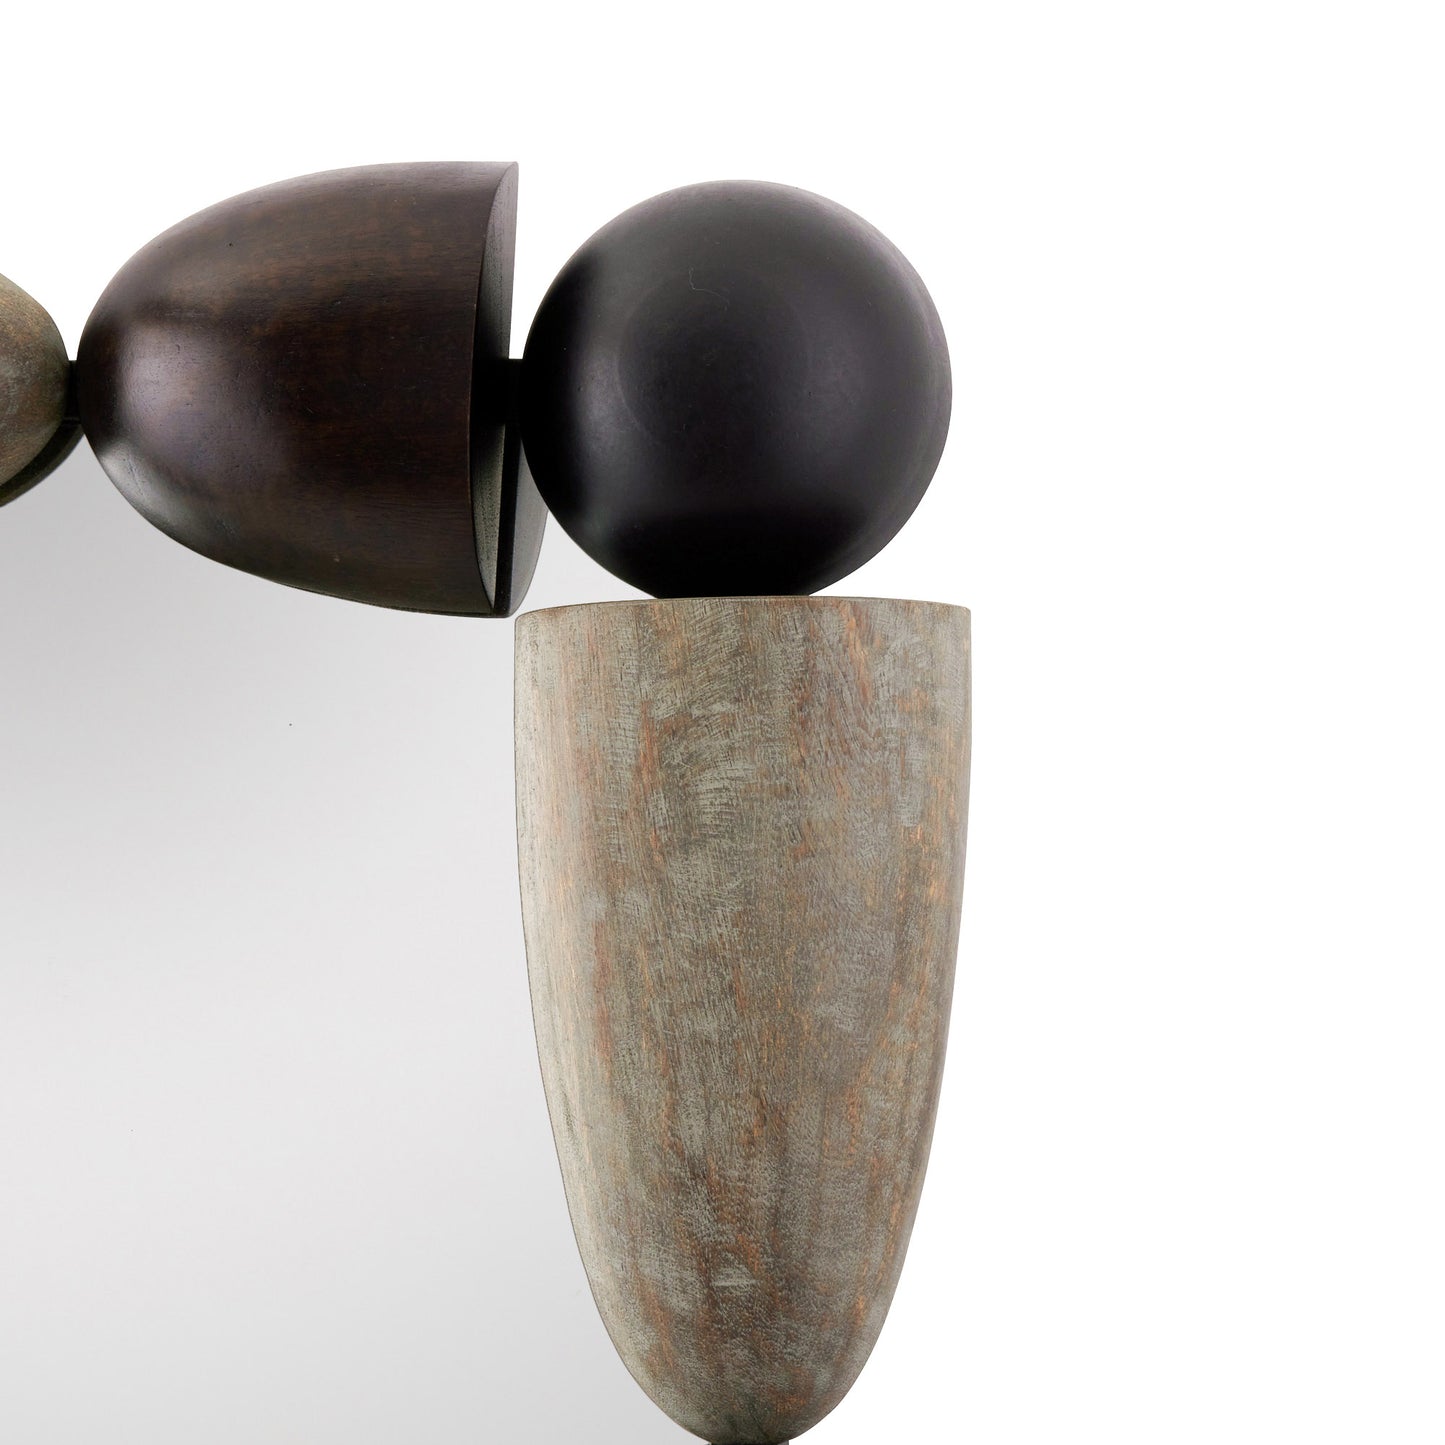 Montego Mirror - Geometric Oak Wood and Iron Frame, Ebony and Gray Wash Finish, Versatile Hanging Options